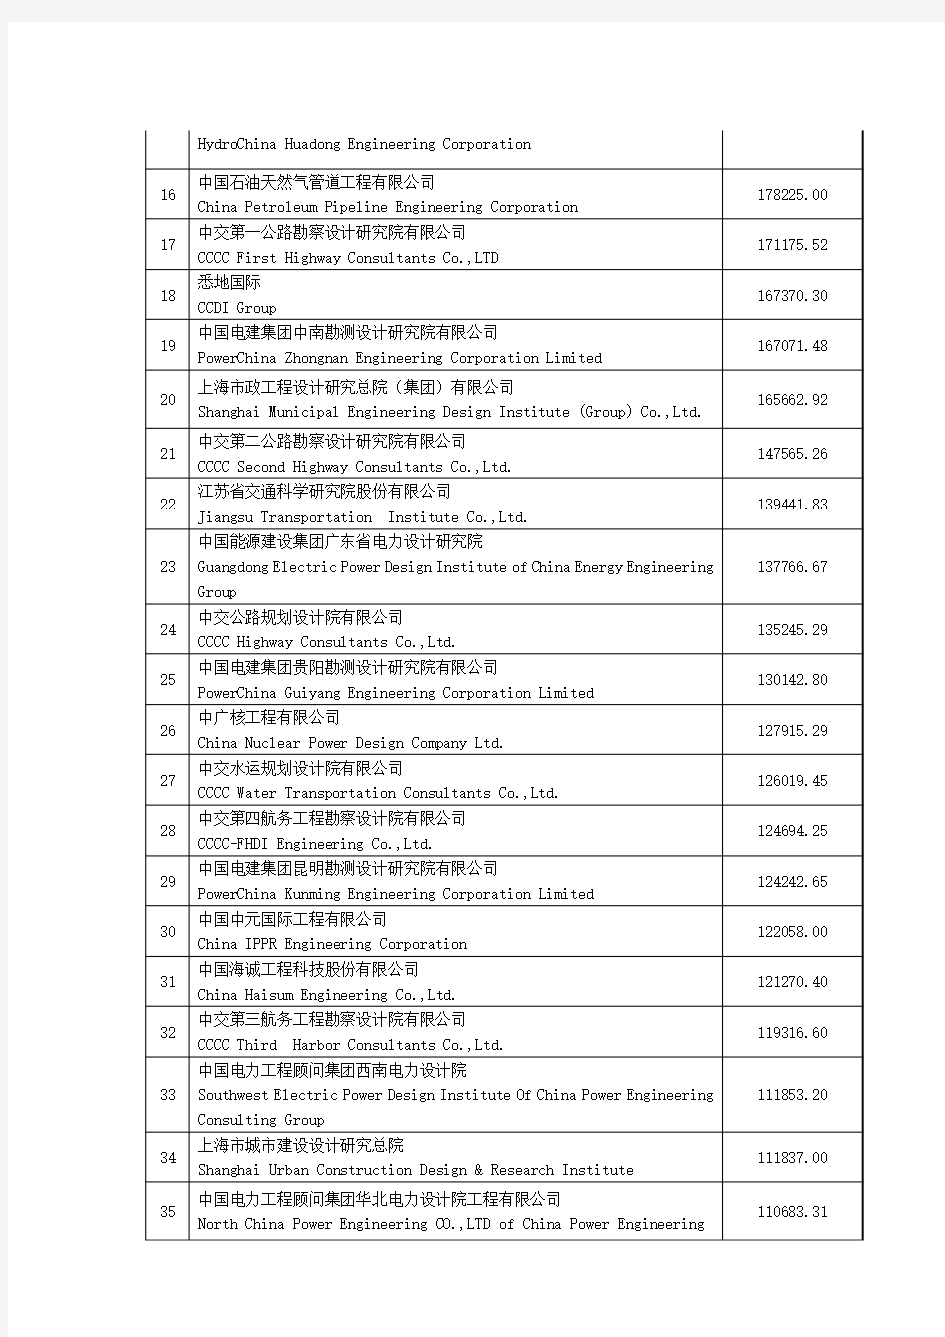 2014年中国工程设计企业60强